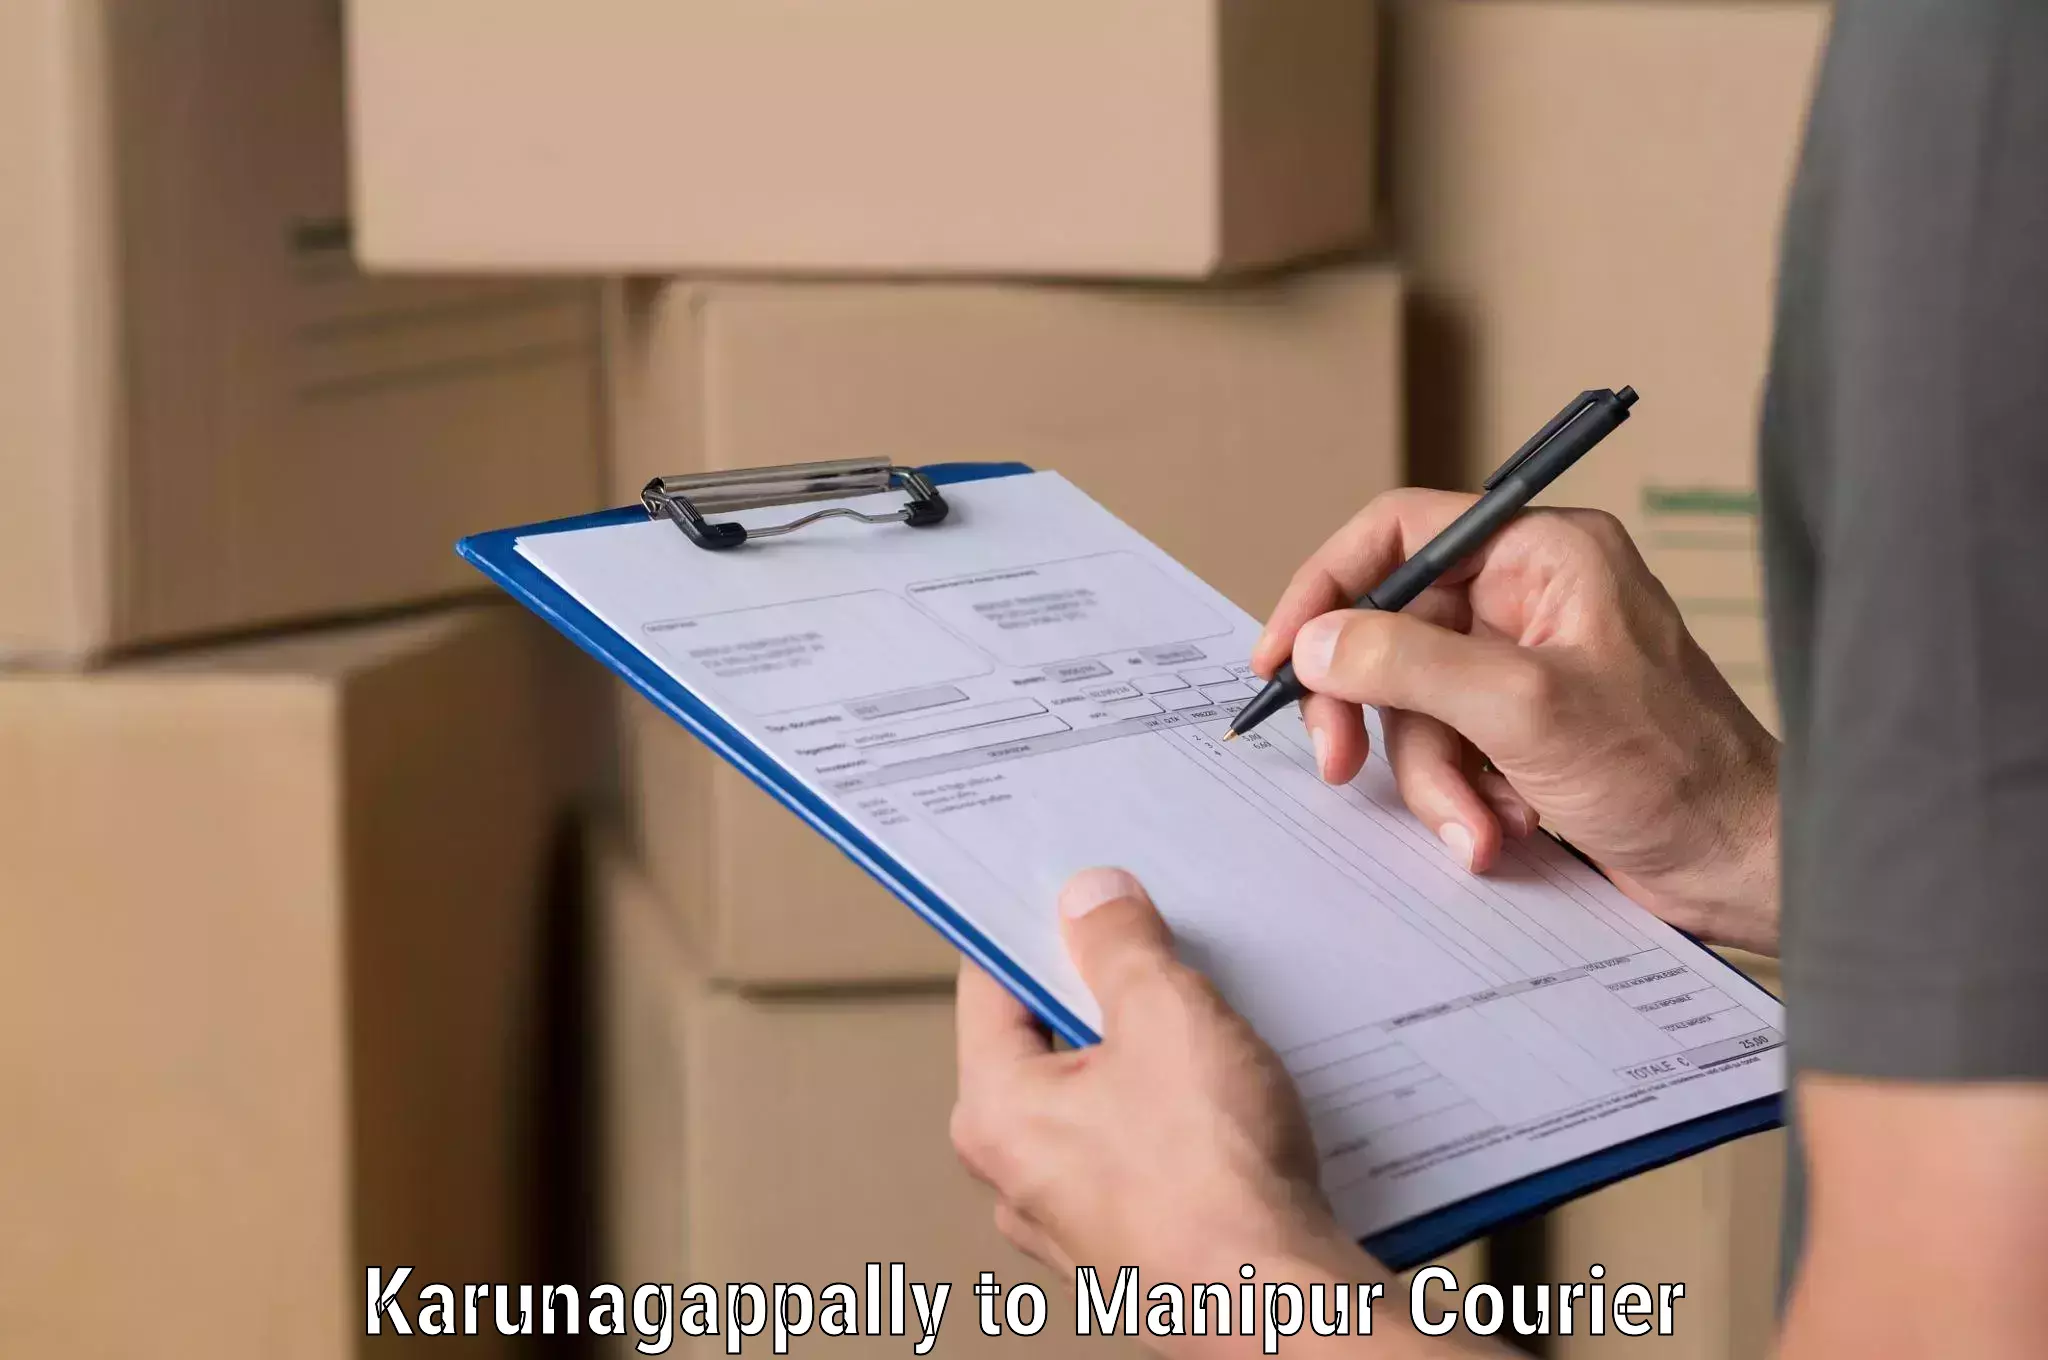 Courier service comparison Karunagappally to Manipur